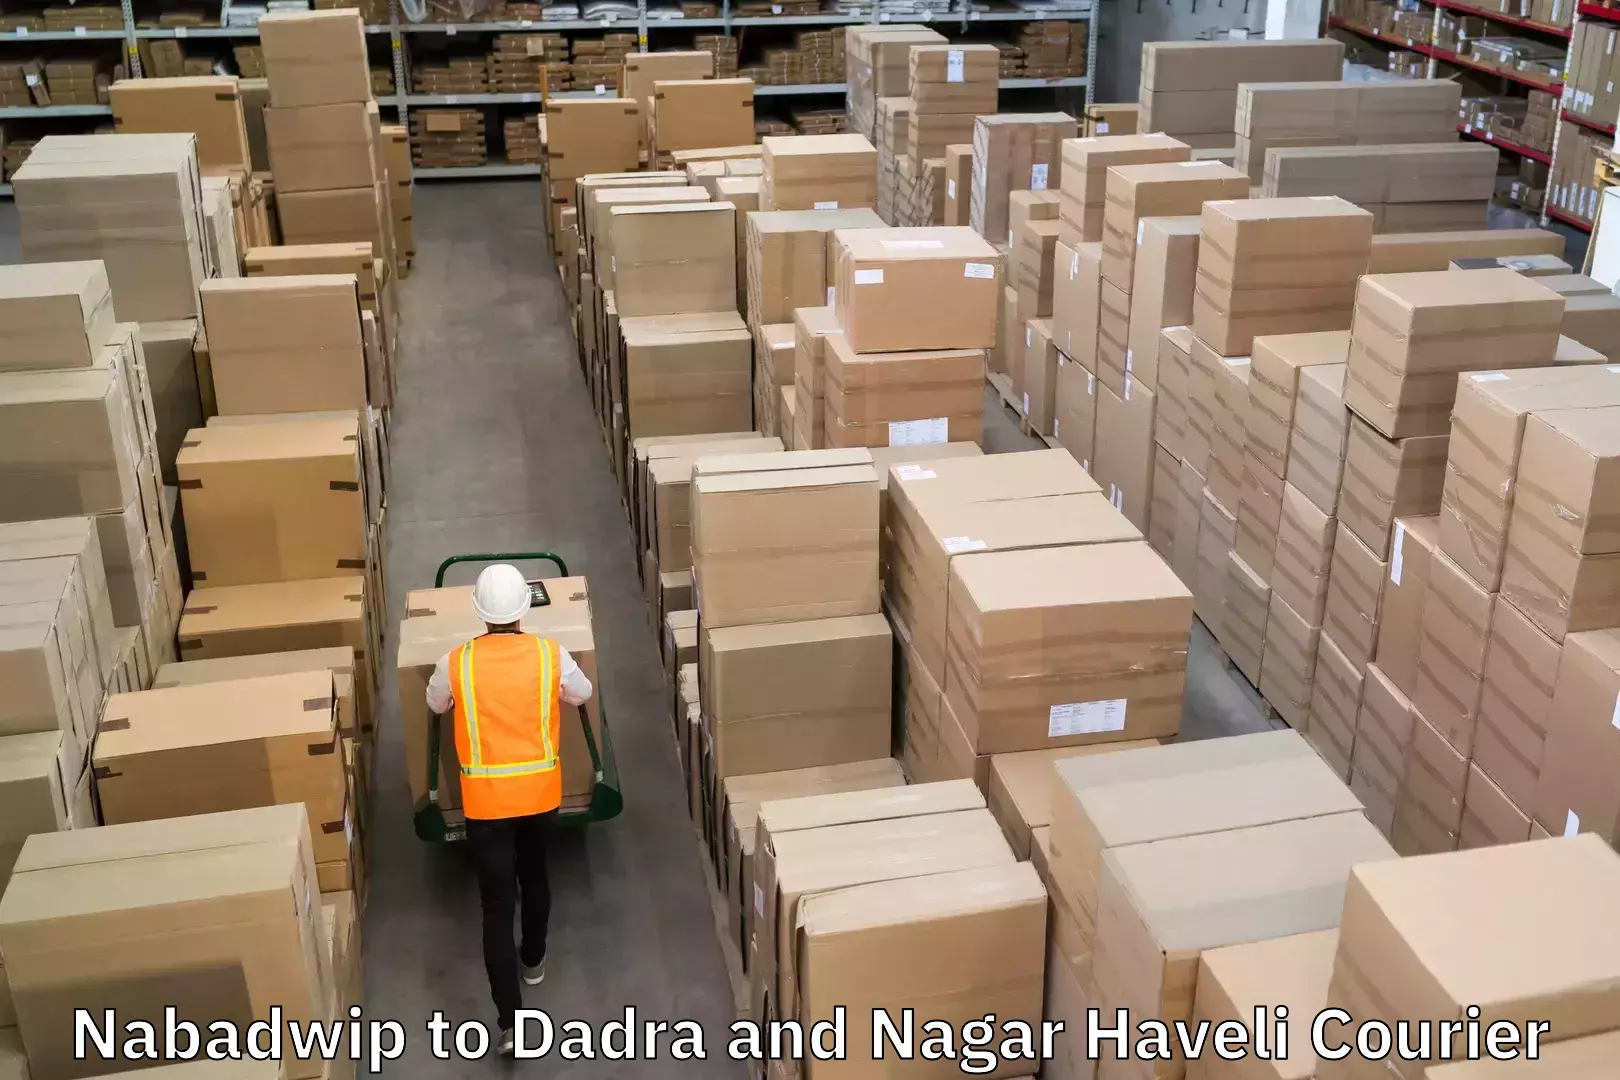 Reliable logistics providers Nabadwip to Dadra and Nagar Haveli